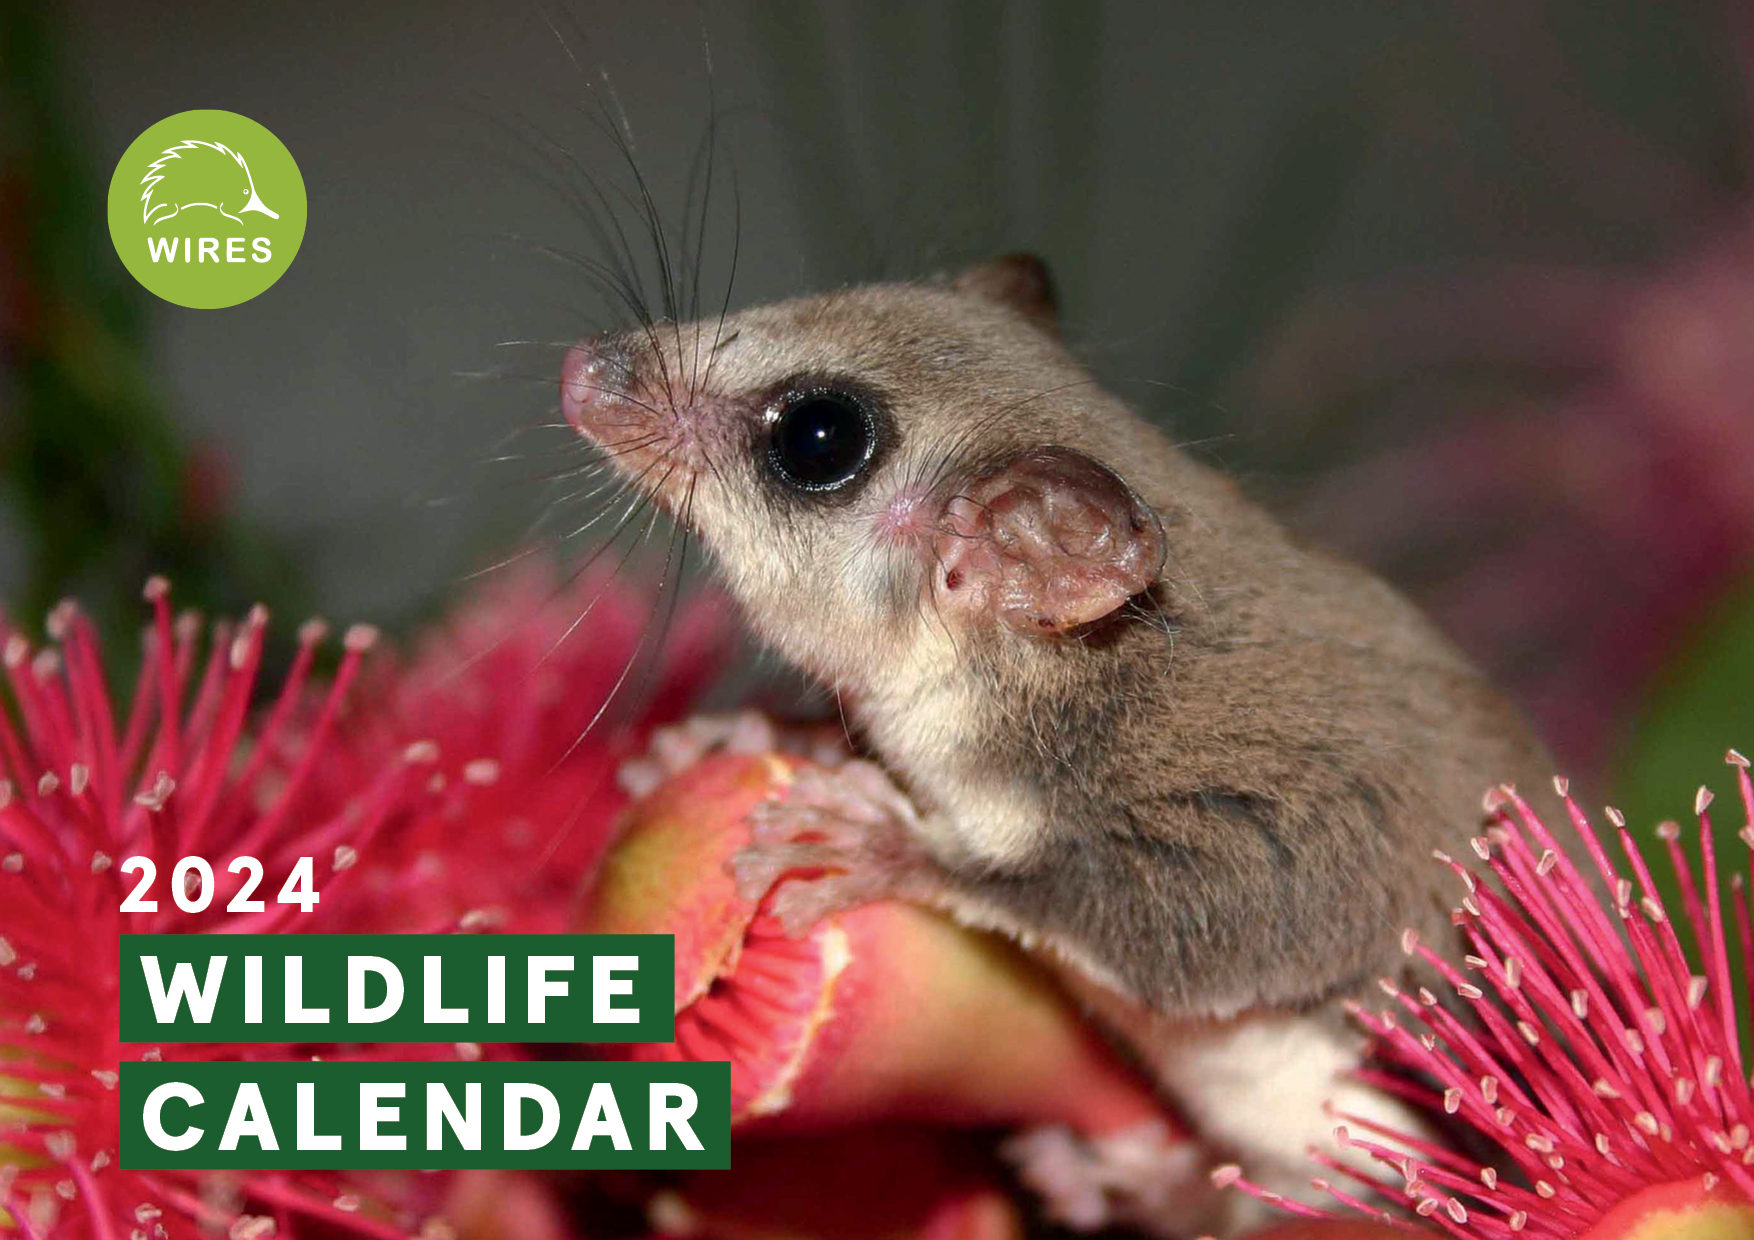 WIRES 2024 Wildlife Calendar